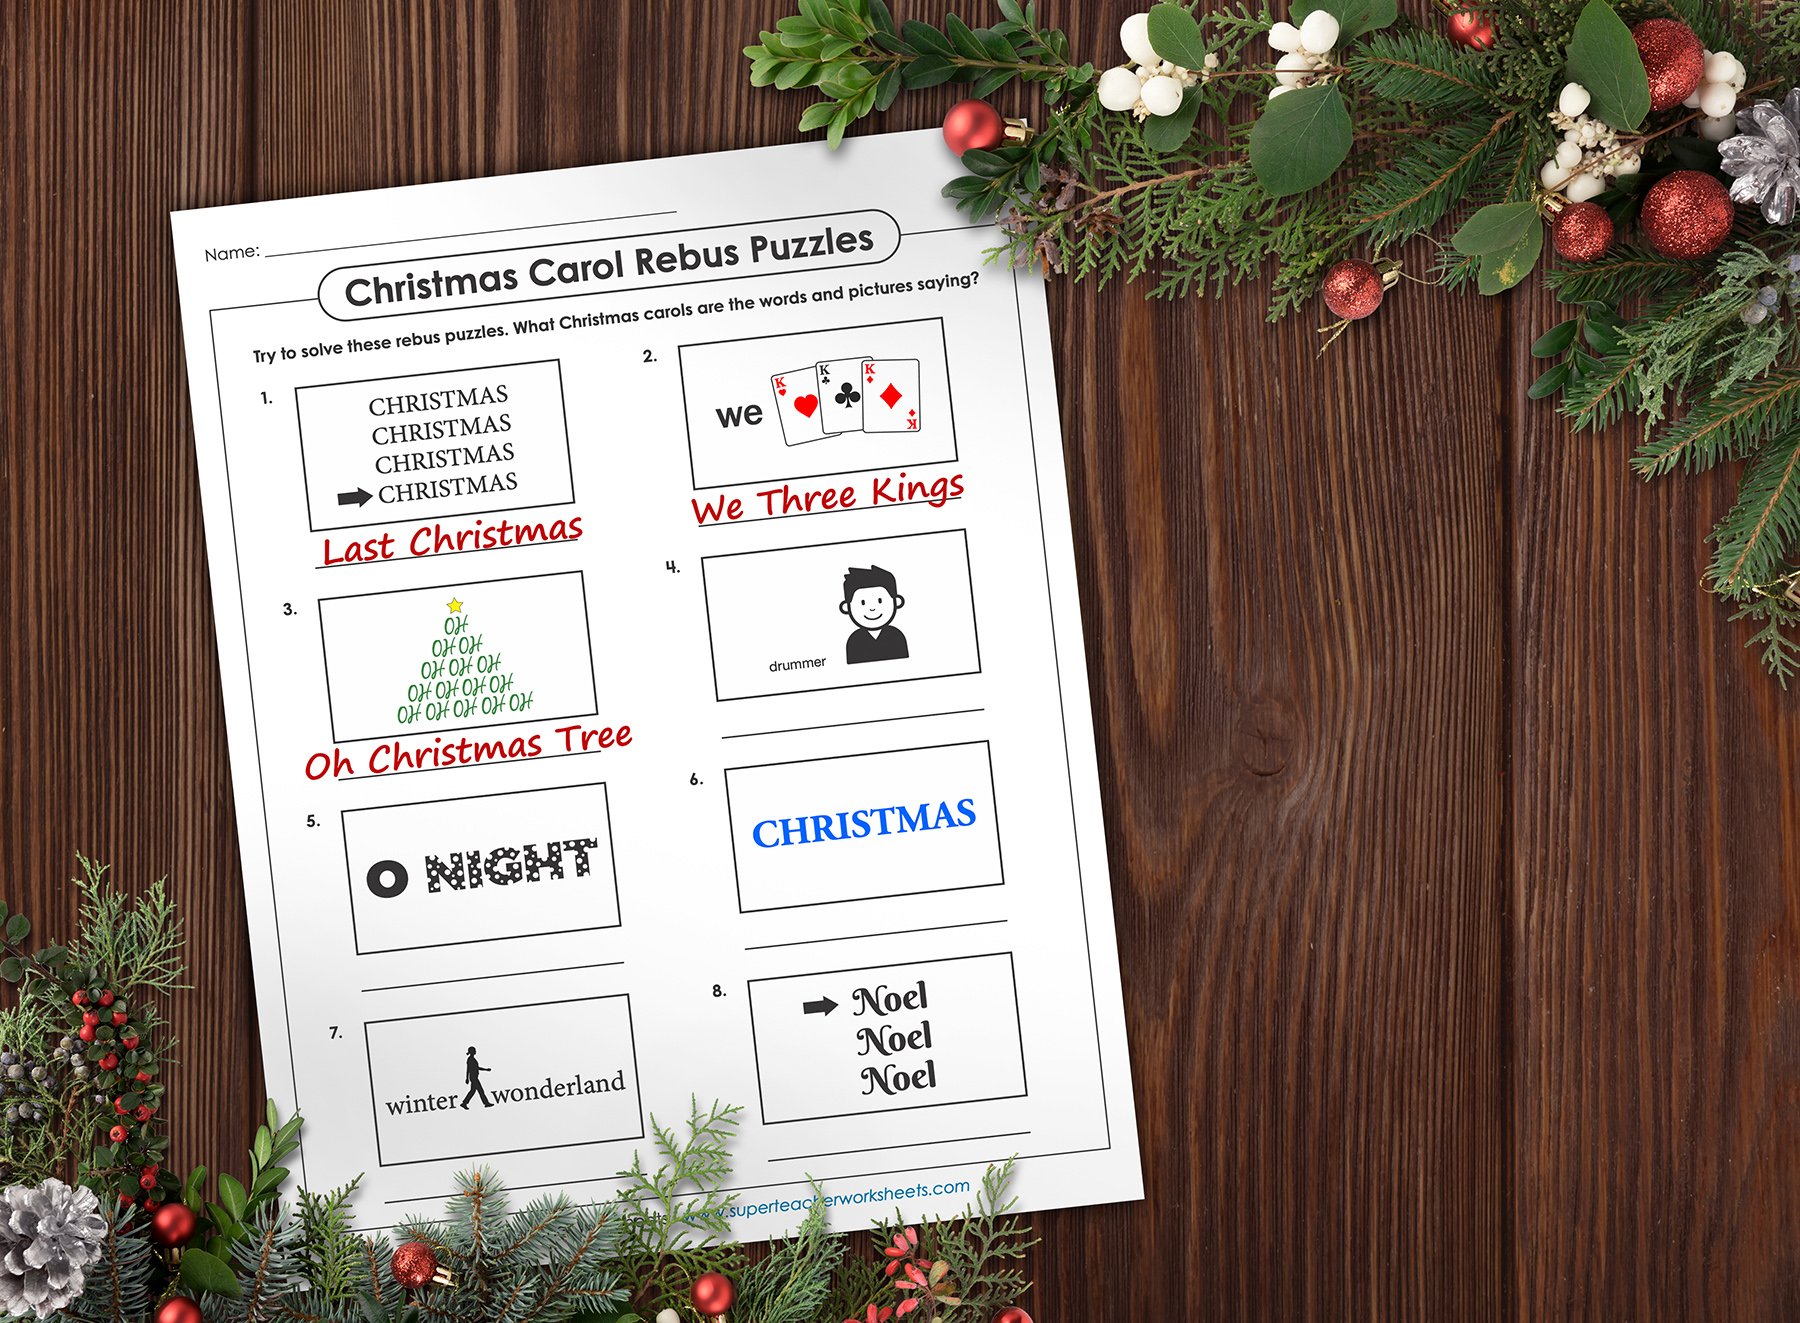 Christmas Carol Brain Teaser Puzzles"